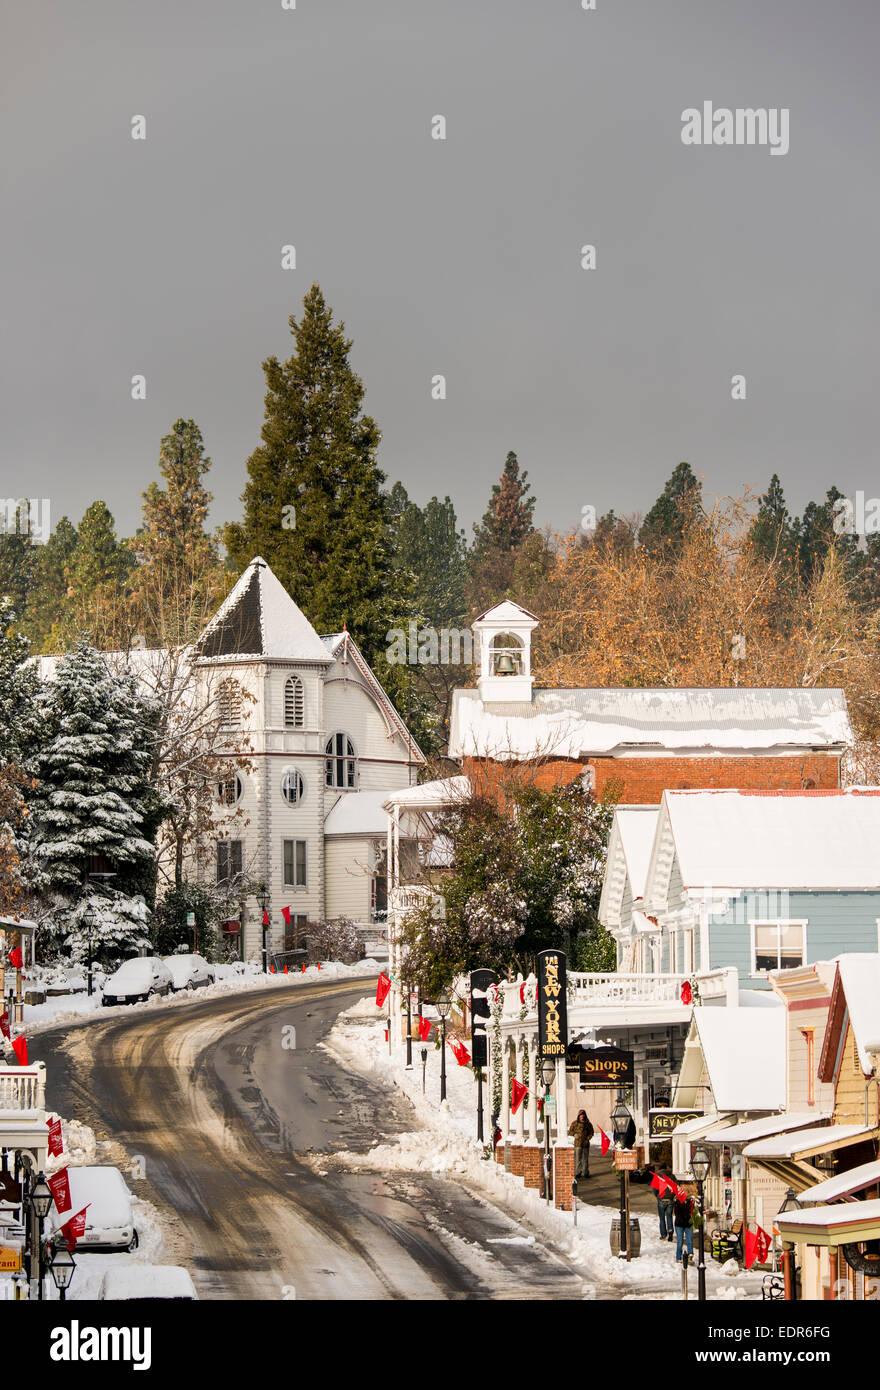 La histórica ciudad de Nevada y frescas nevadas invernales Foto de stock